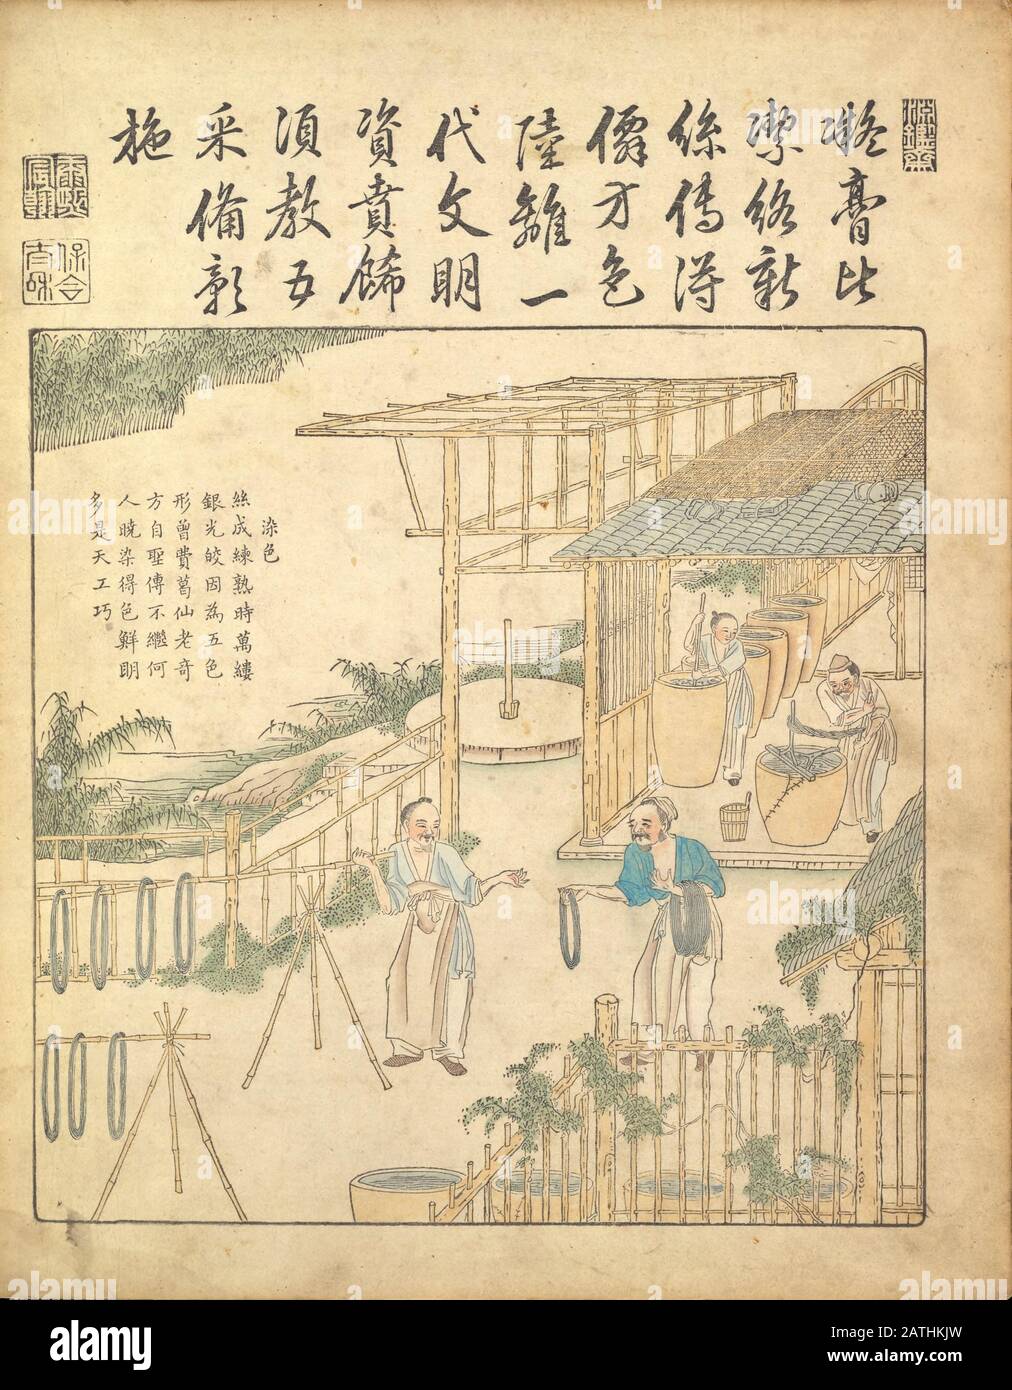 Chinesische Kunst aus dem 17. Jahrhundert Seidenherstellung, Die Seide Aus Yu zhi geng zhi tu von Jiao, Bingzhen, 1696 Verzog und weste Stockfoto